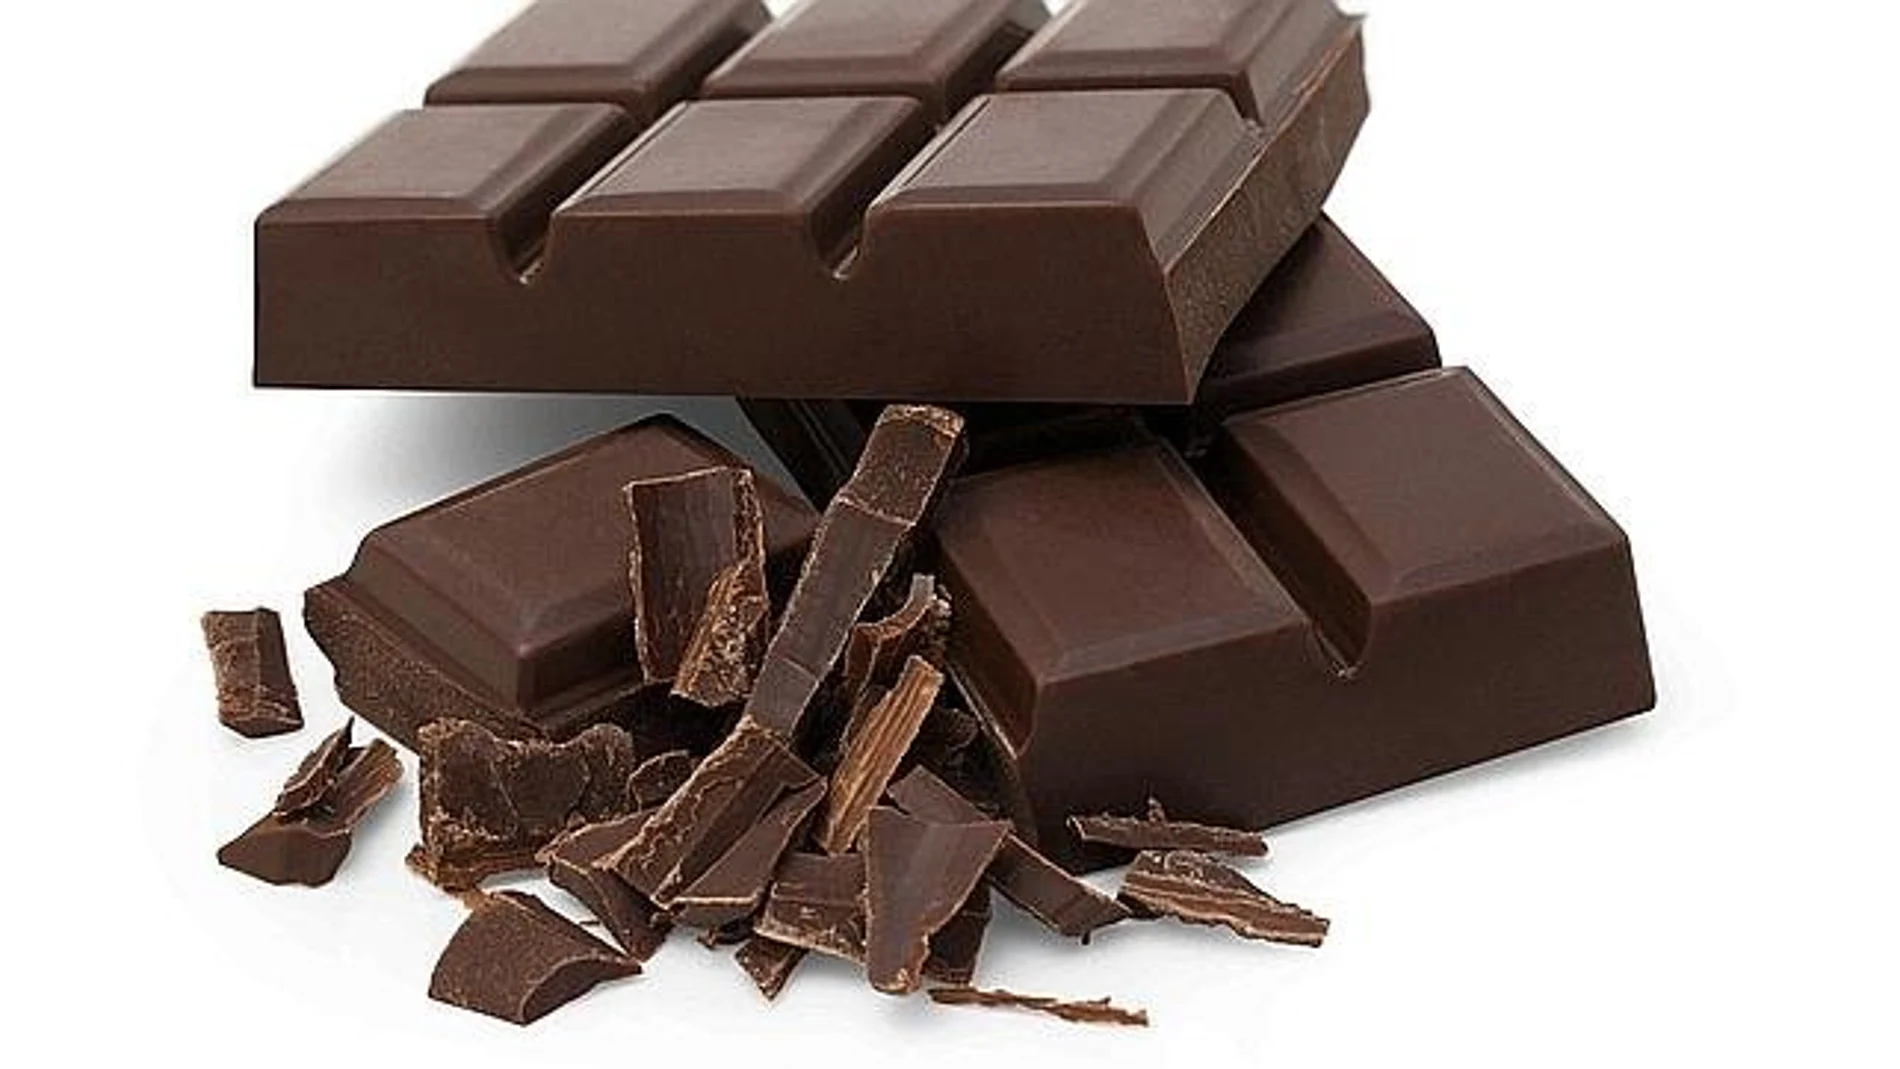 Una ración de chocolate negro mejora el rendimiento deportivo